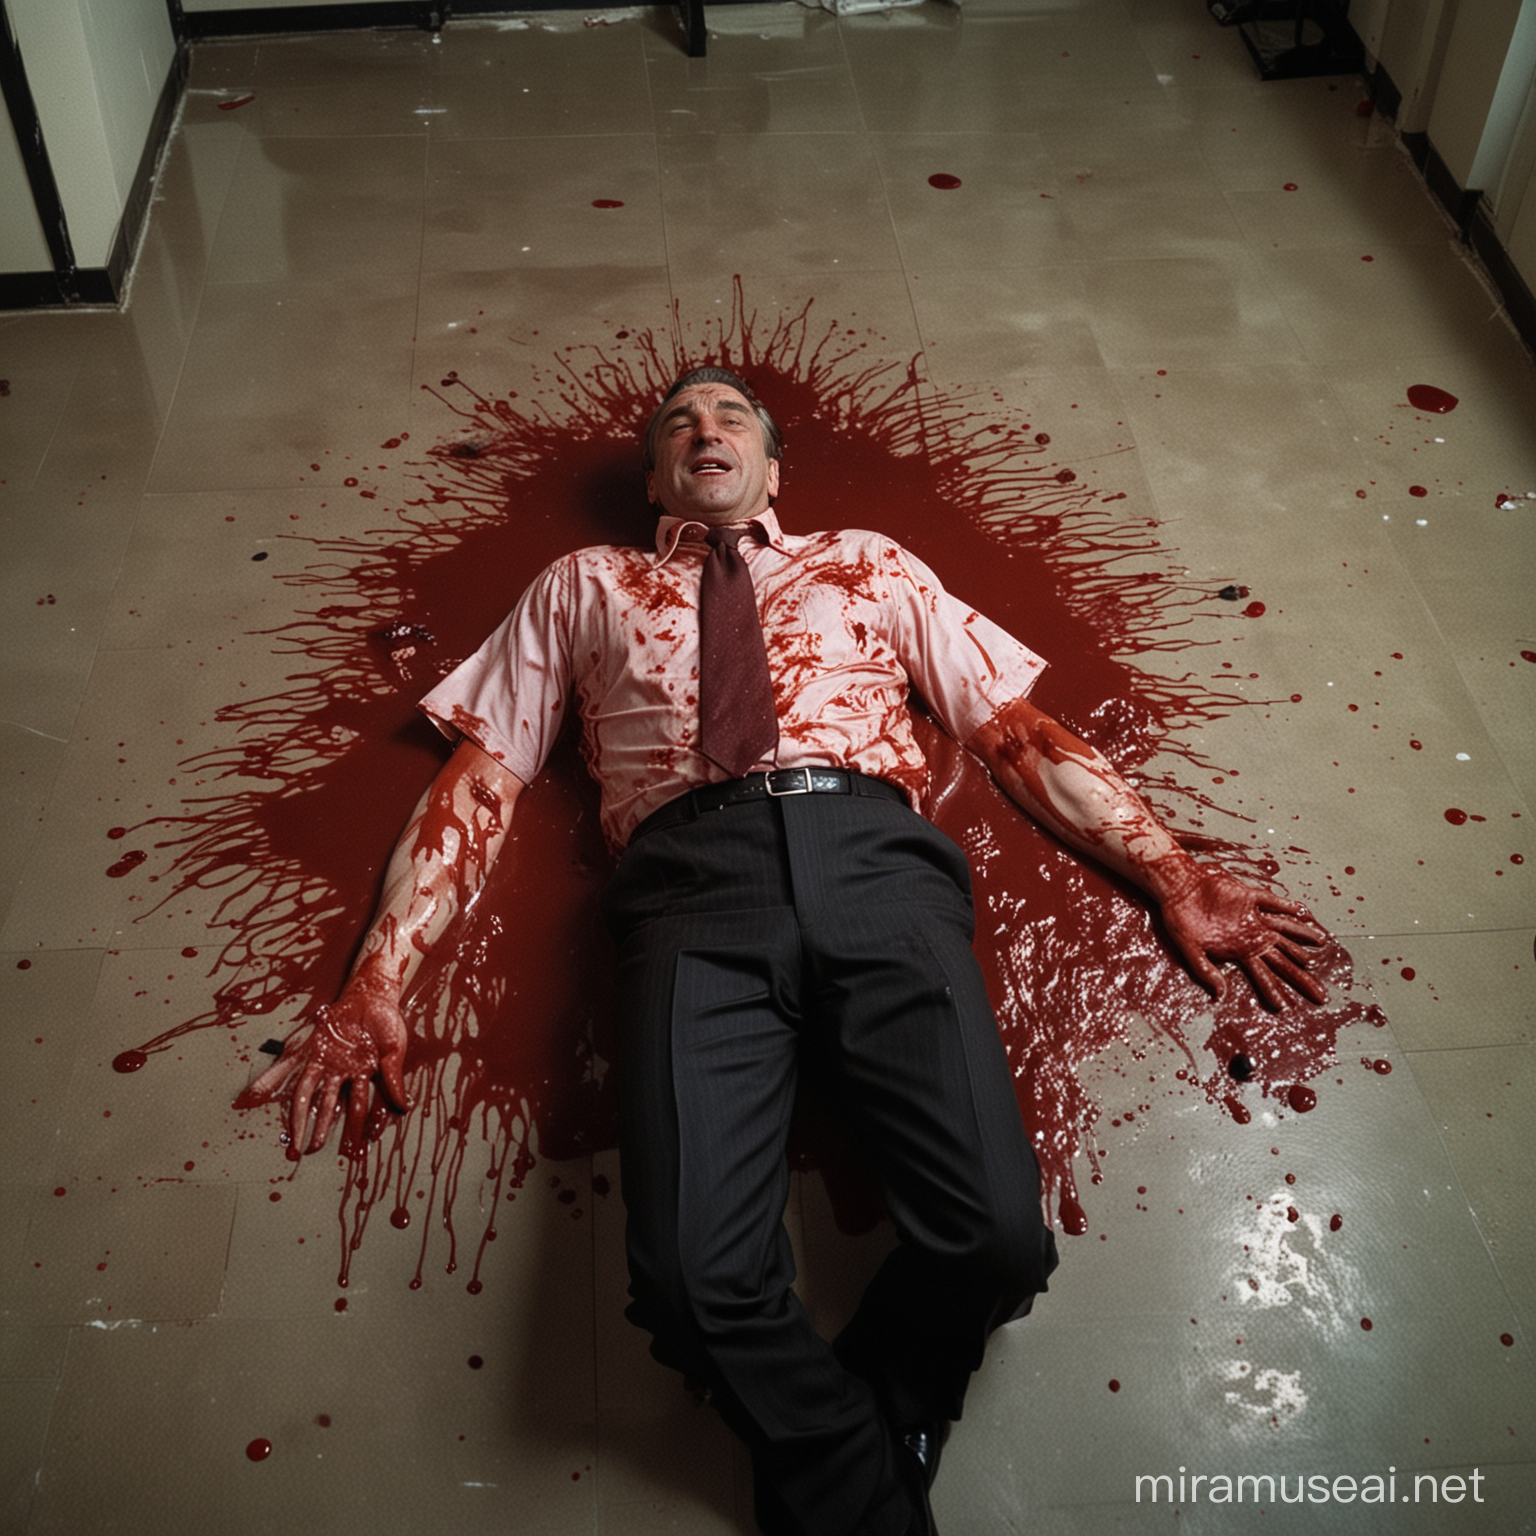 dead robert de niro lying in a pool of blood, in an office, dim lighting